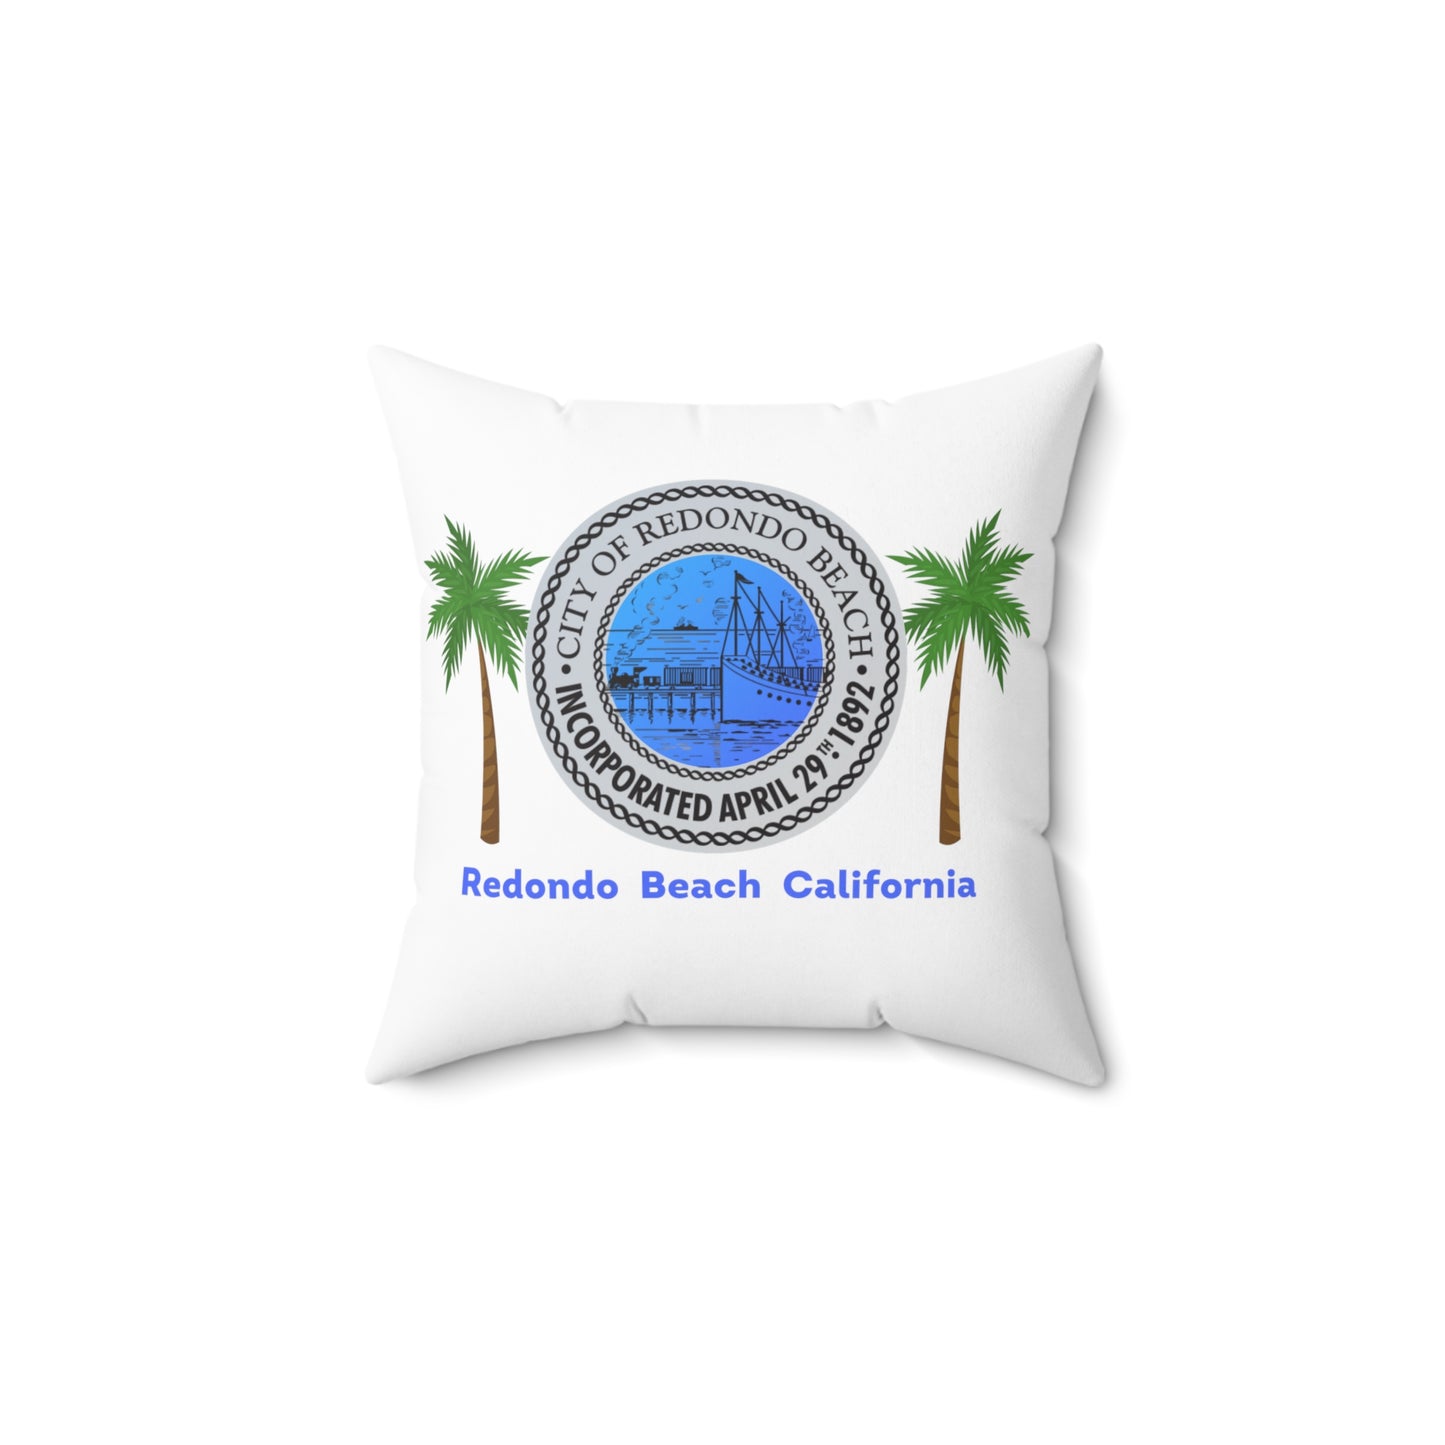 Redondo Beach California 90277 90278 MAP Spun Polyester Square Pillow